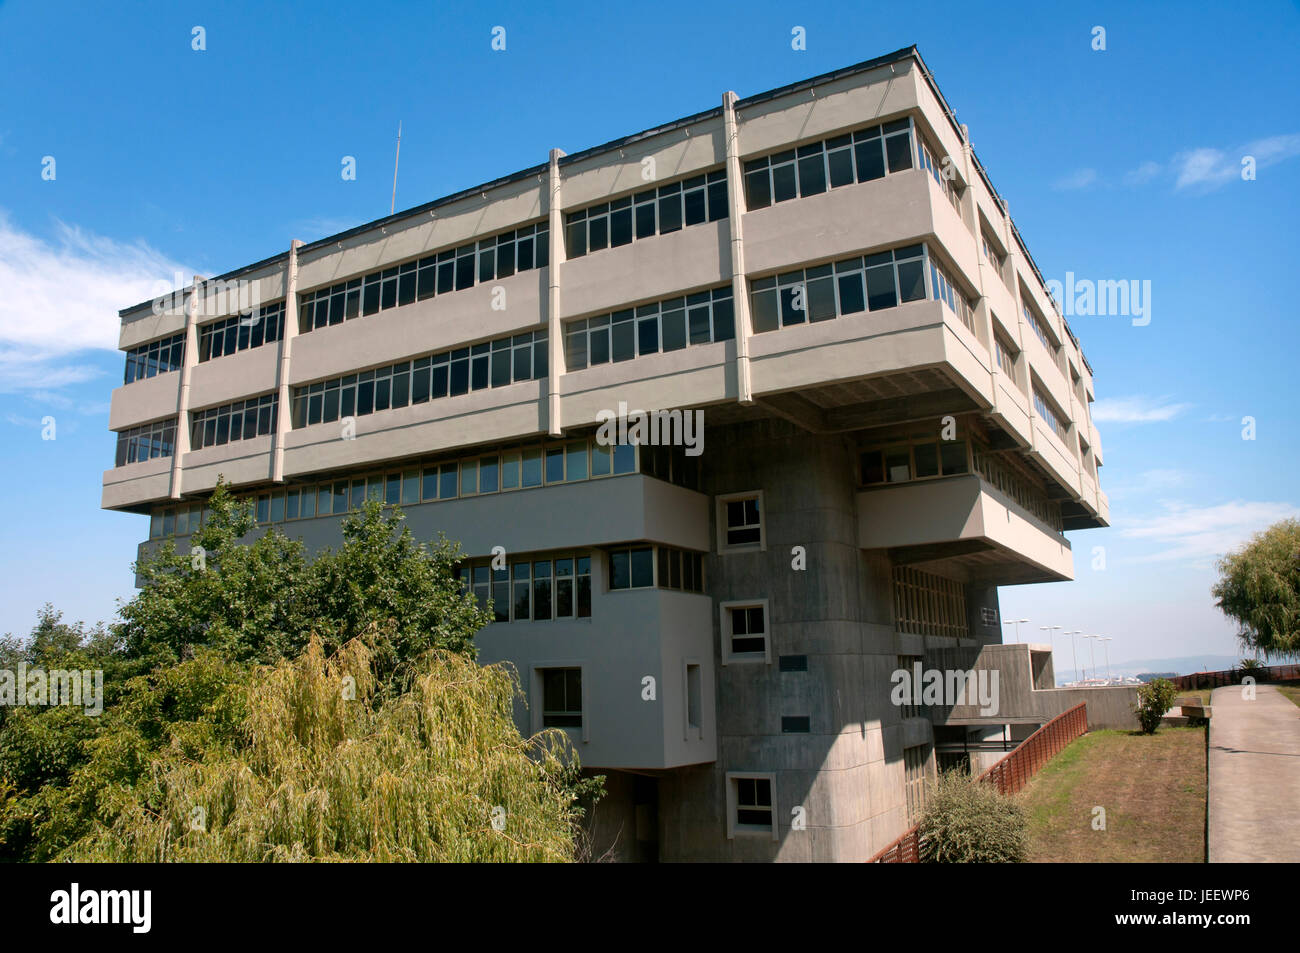 L'École technique de l'architecture 'Pedro Barrie de la Mata', La Corogne, une région de Galice, Espagne, Europe Banque D'Images